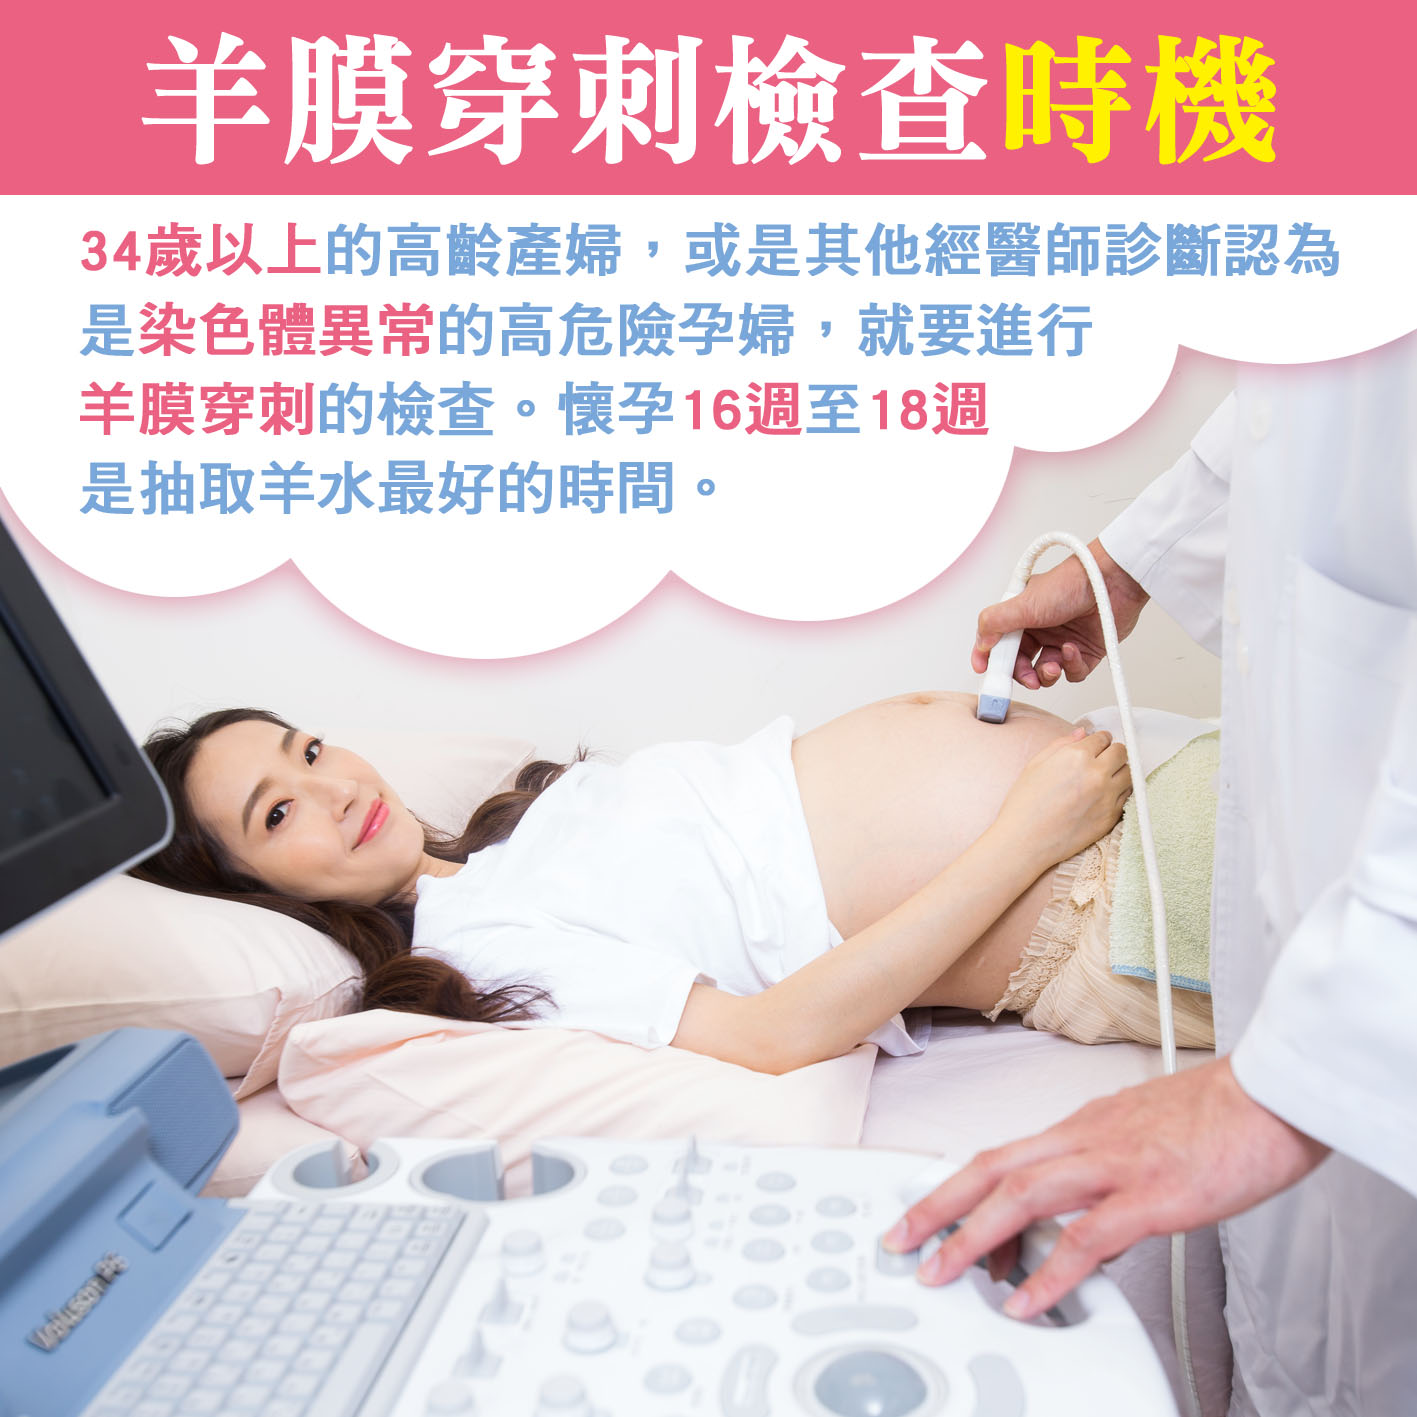 懷孕第17週-羊膜穿刺檢查時機文章照片